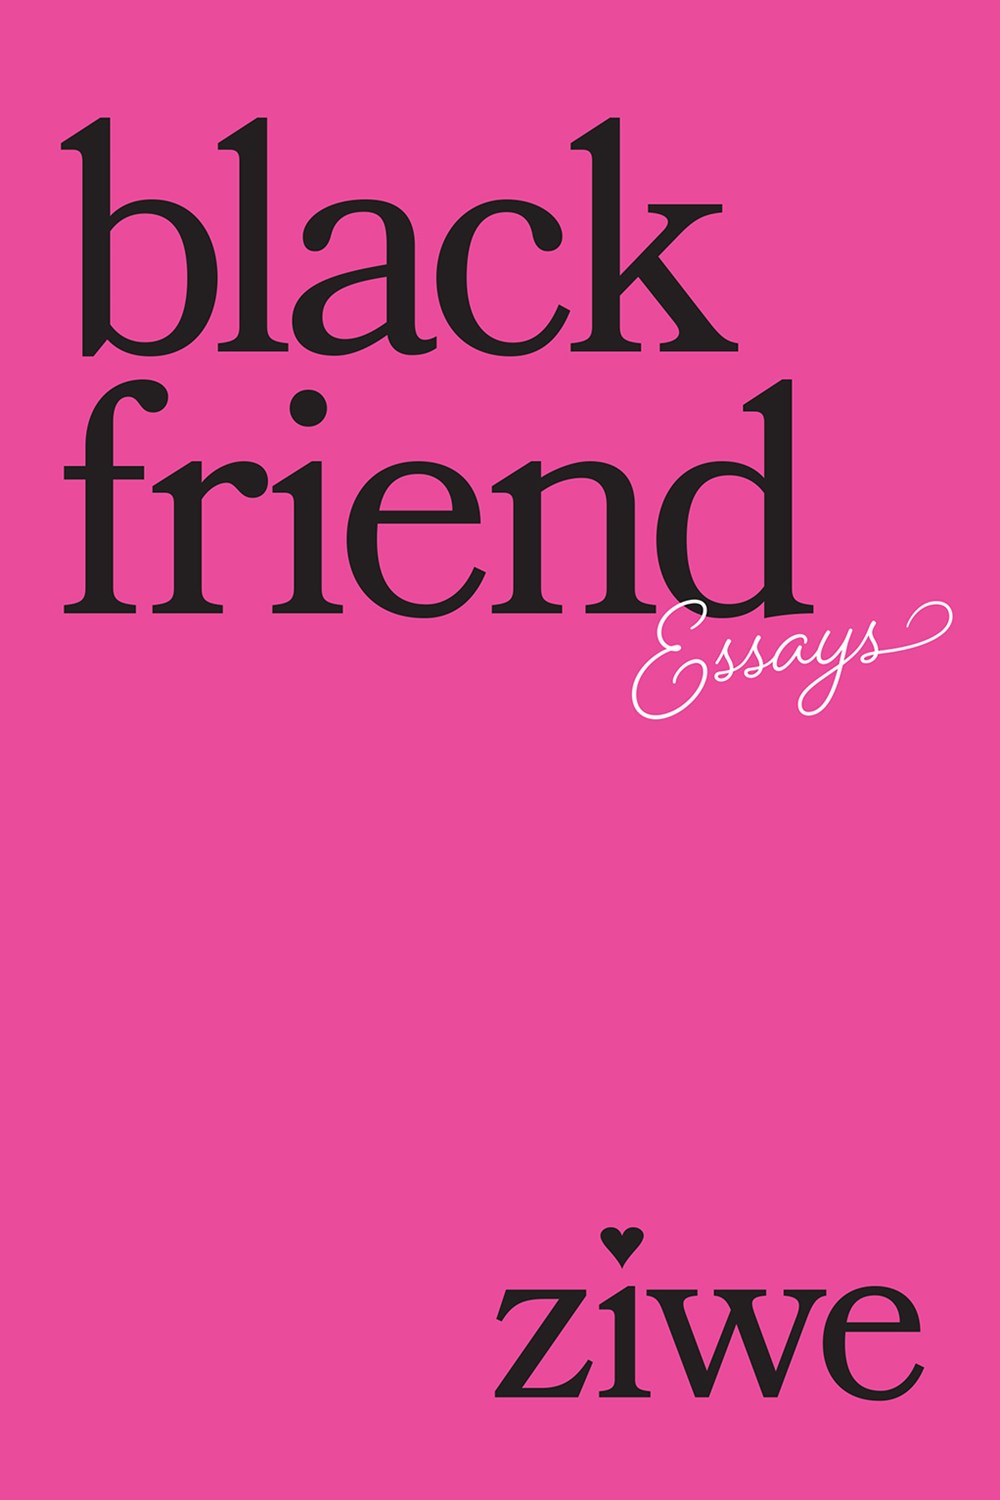 black-friend-ziwe